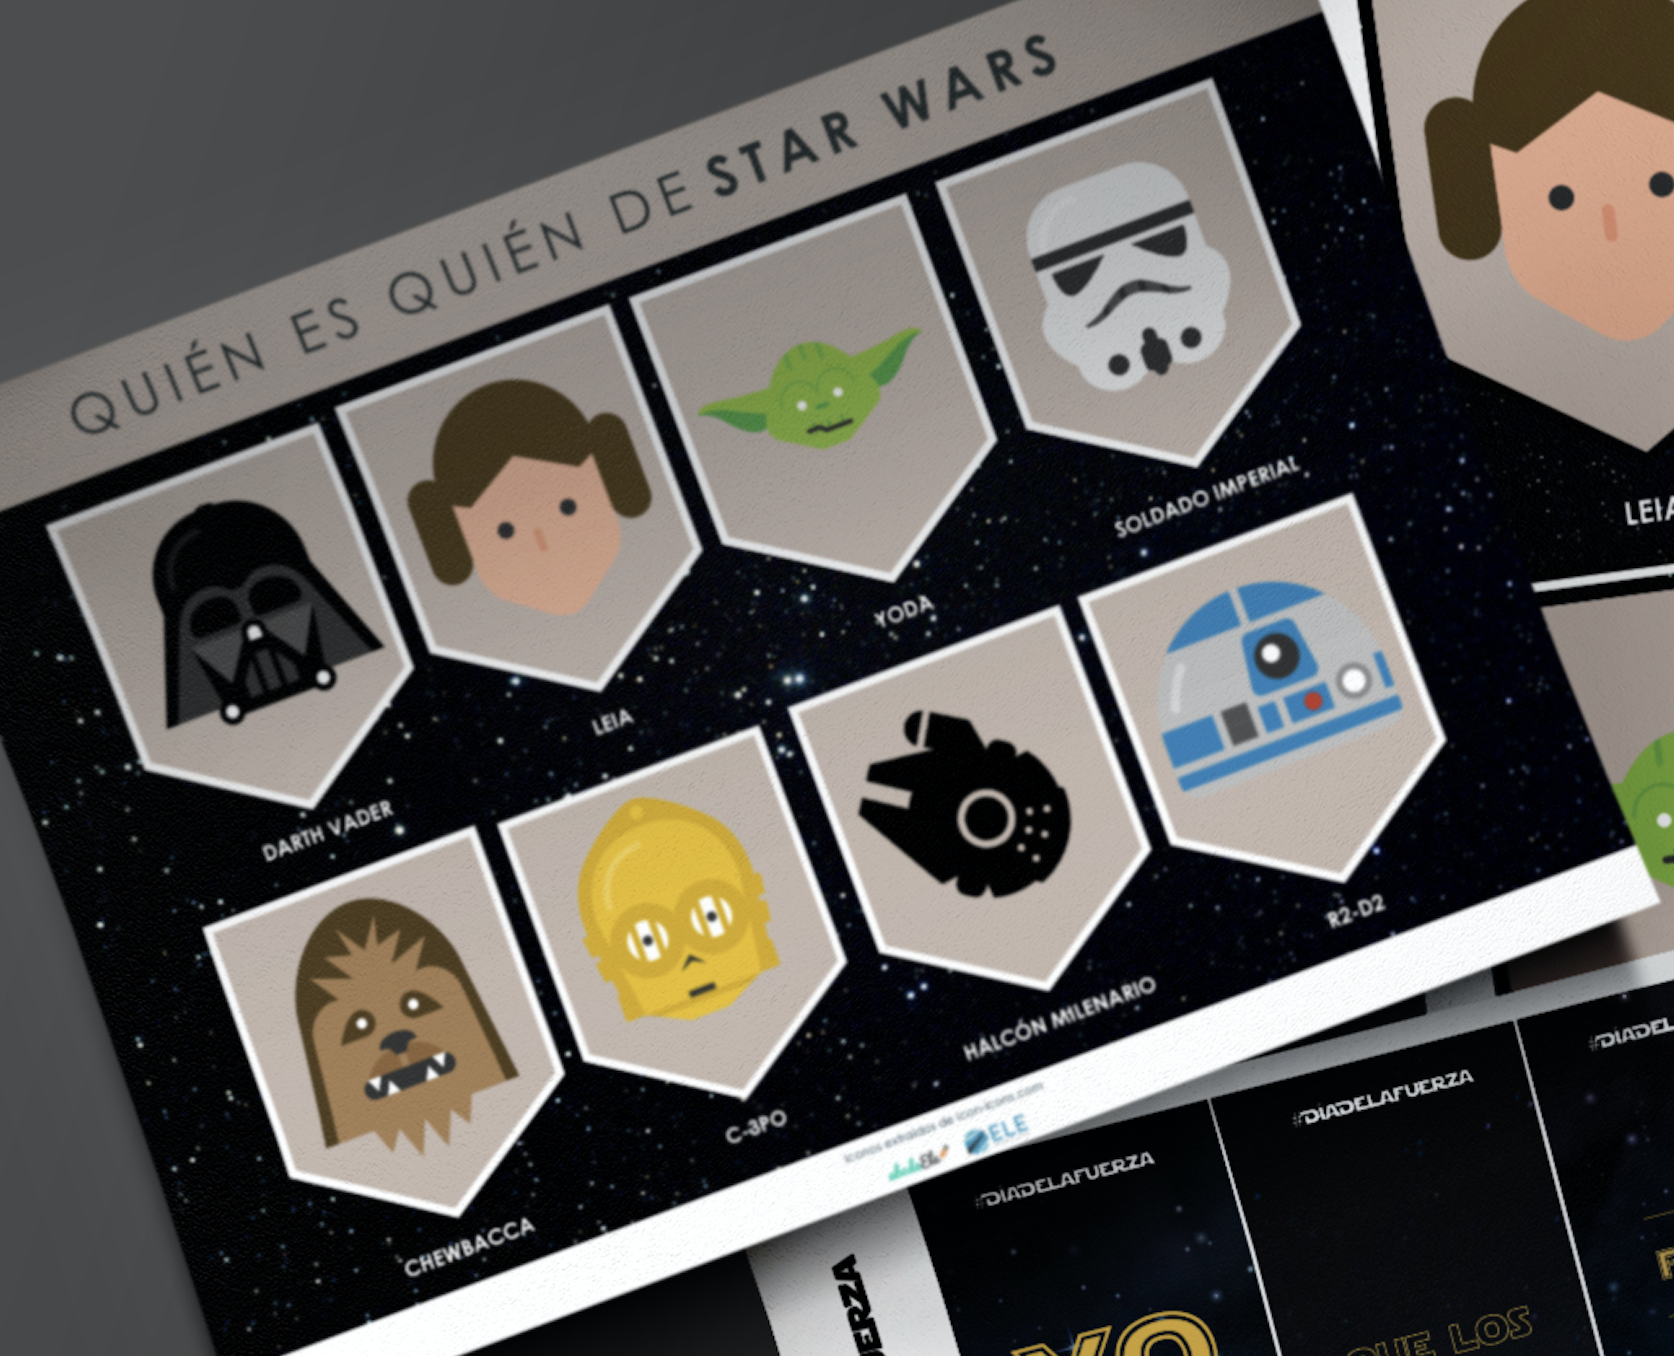 Materiales de Star Wars para tus clases de ELE. Juegos, marcapáginas y mucho más para divertir en el aula con los personajes más famosos de la galaxia. #spanishteacher #juegos #starwars